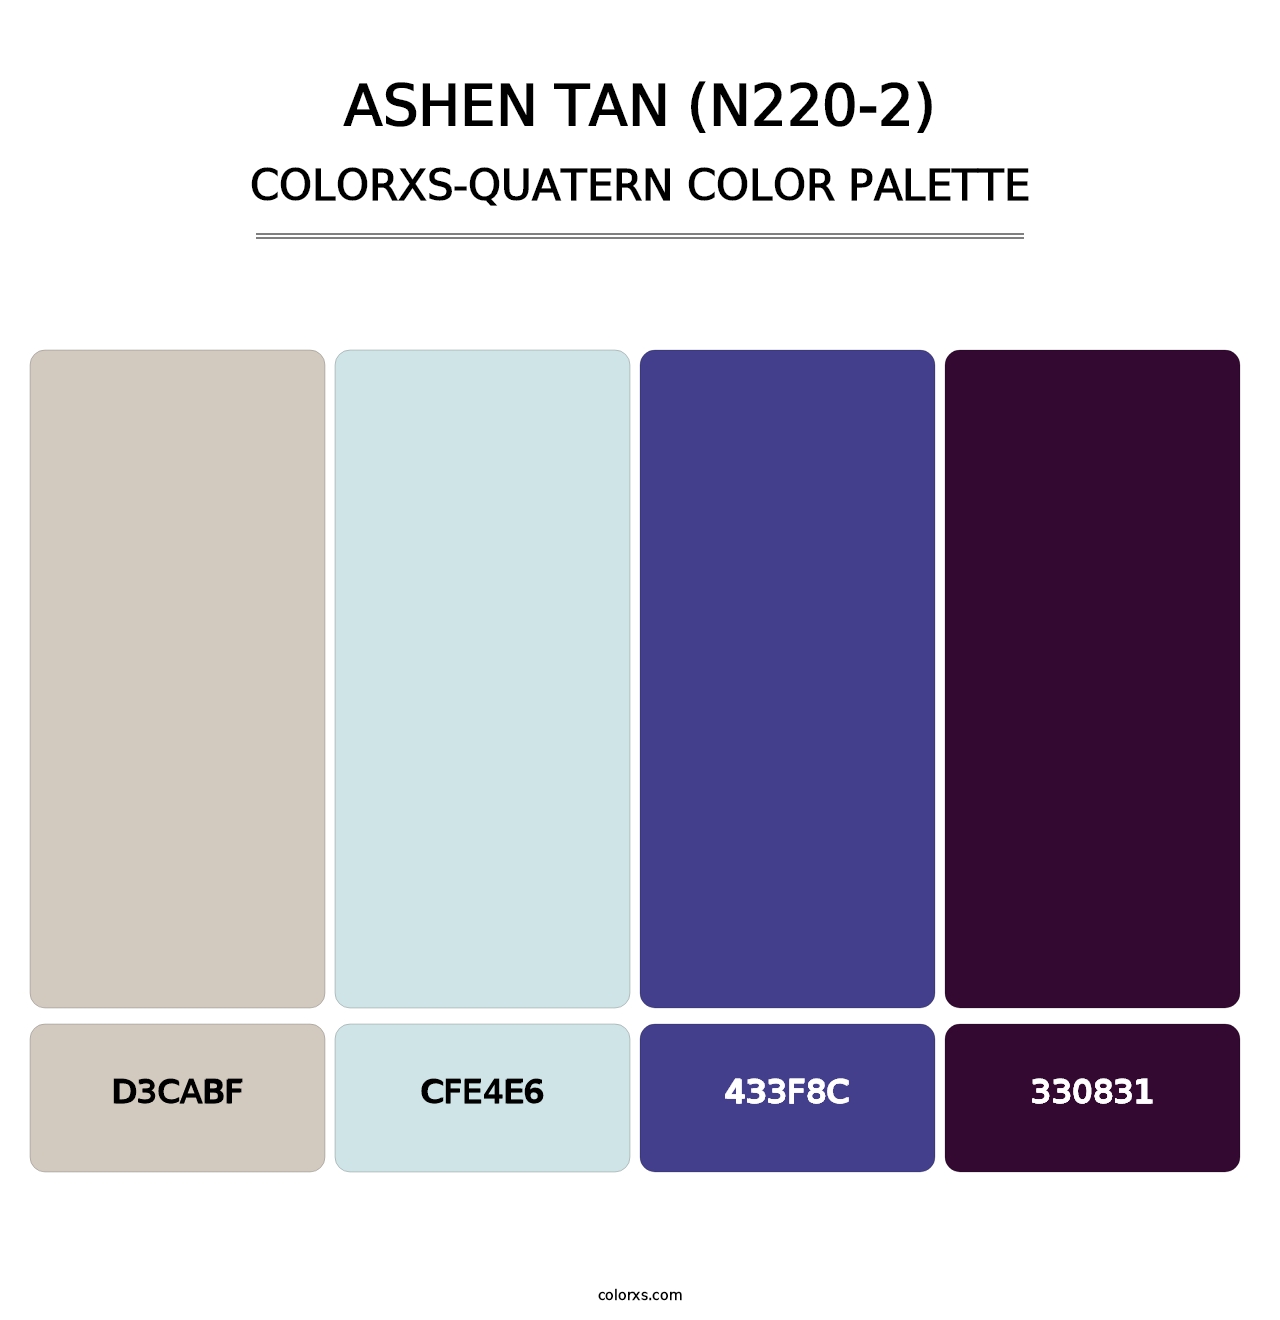 Ashen Tan (N220-2) - Colorxs Quatern Palette